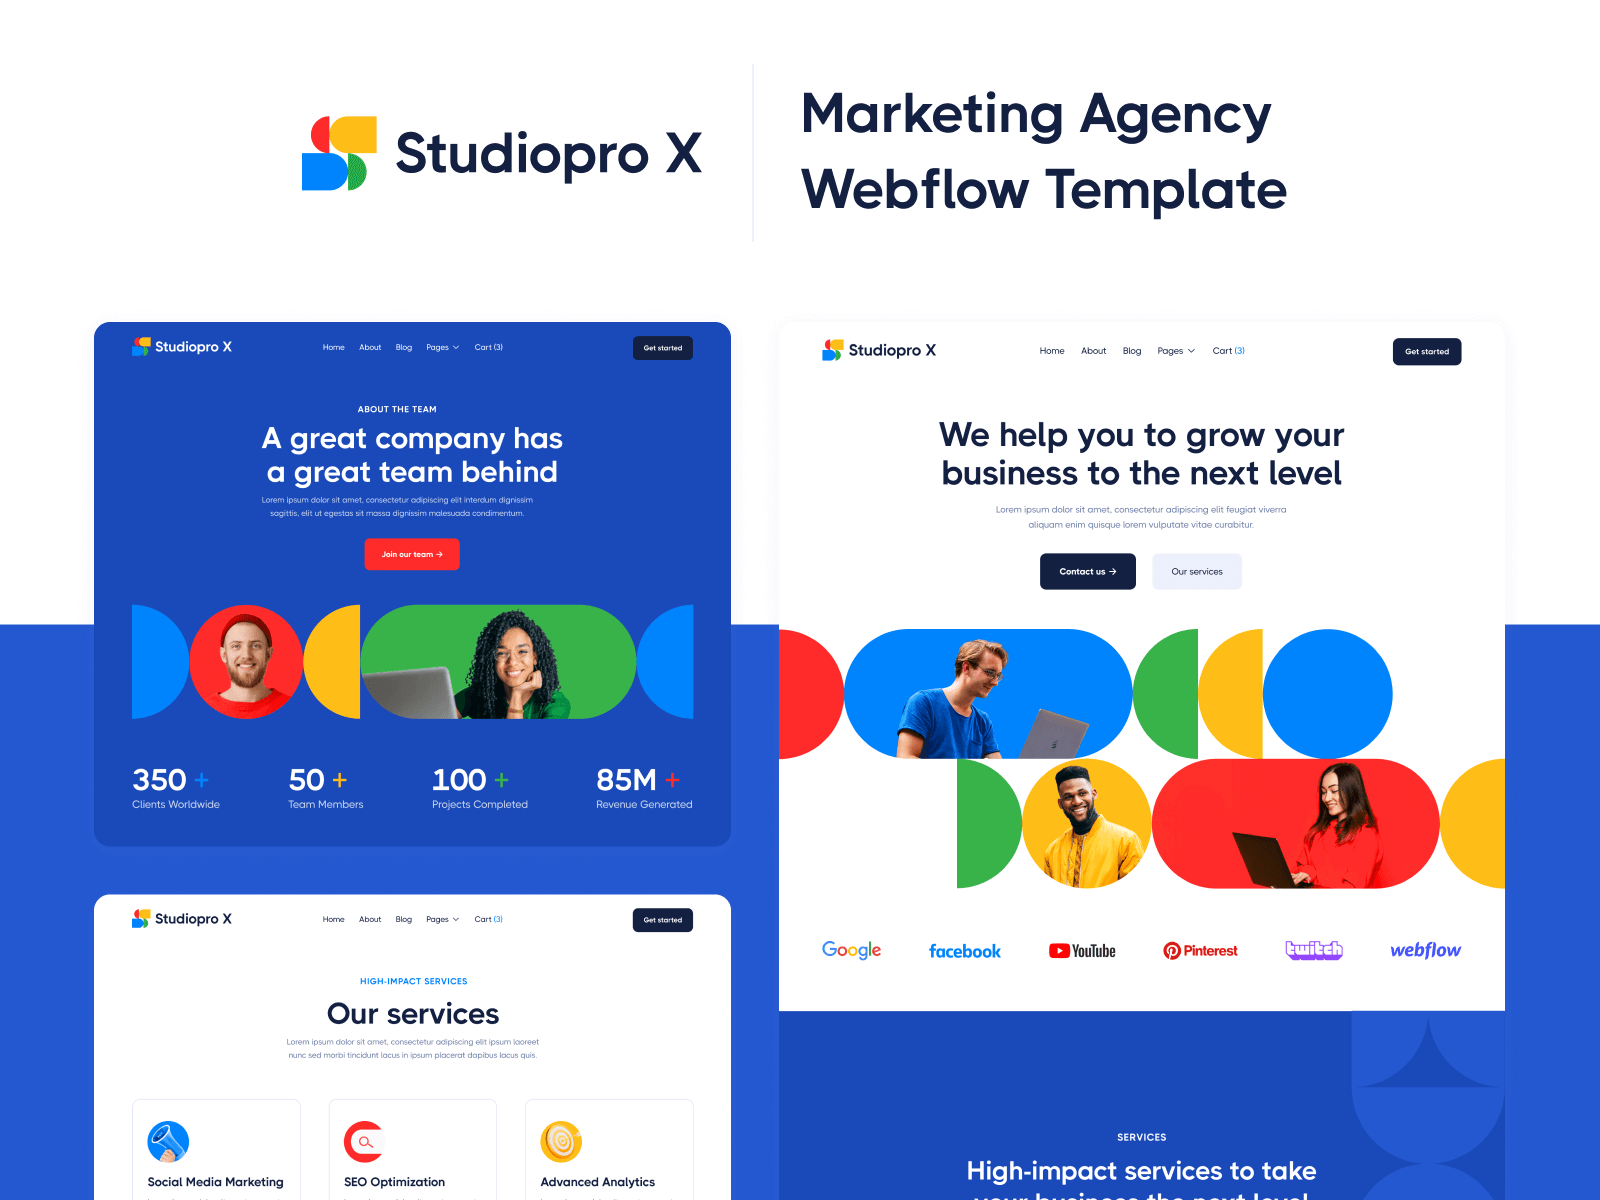 Studiopro X Marketing Agency Webflow Template on Behance